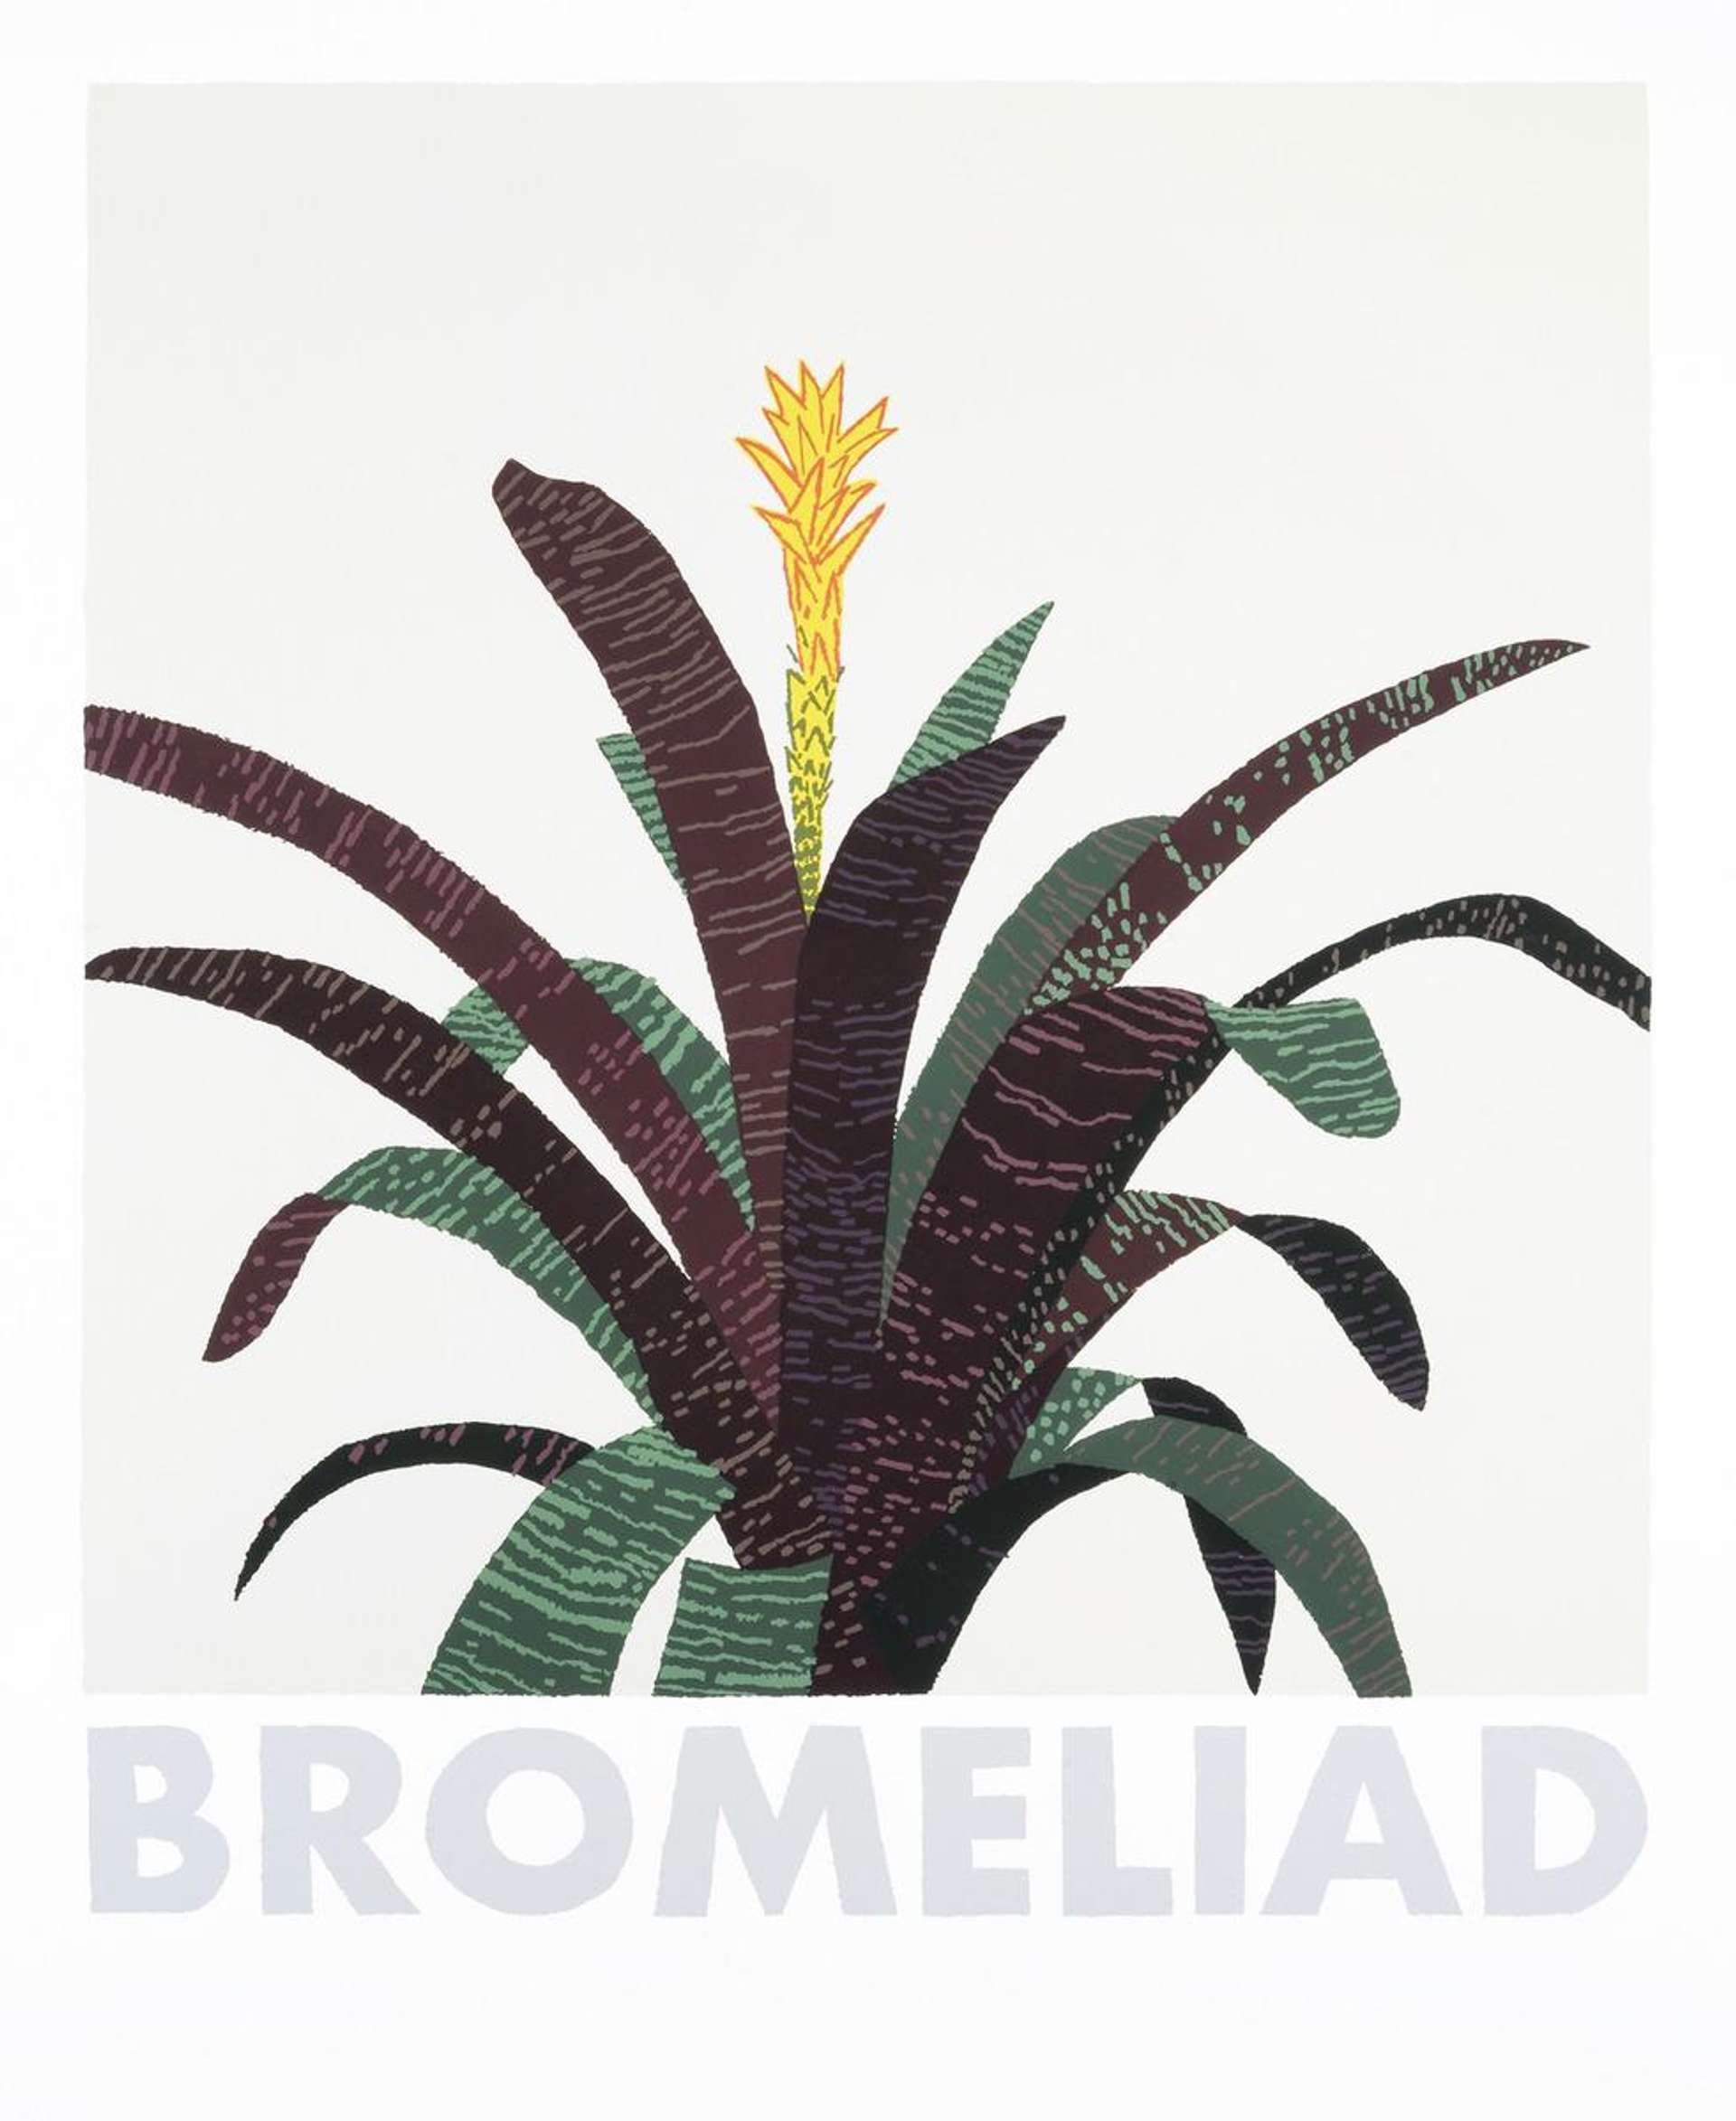 Jonas Wood: Bromeliad - Signed Print